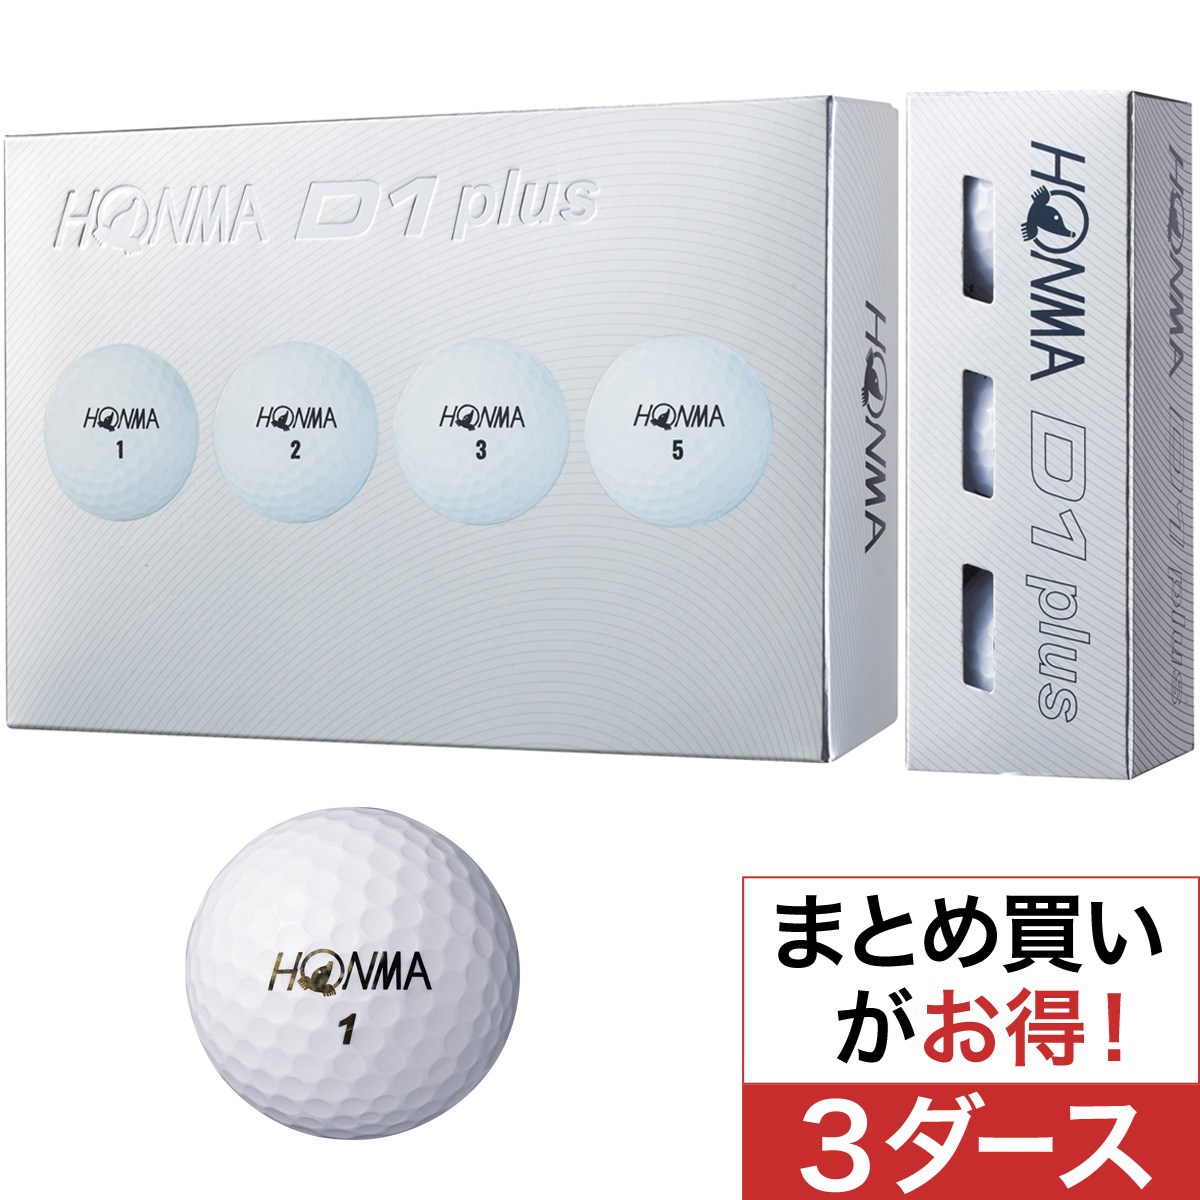 本間ゴルフ(HONMA GOLF) D1 plus ボール 3ダースセット 